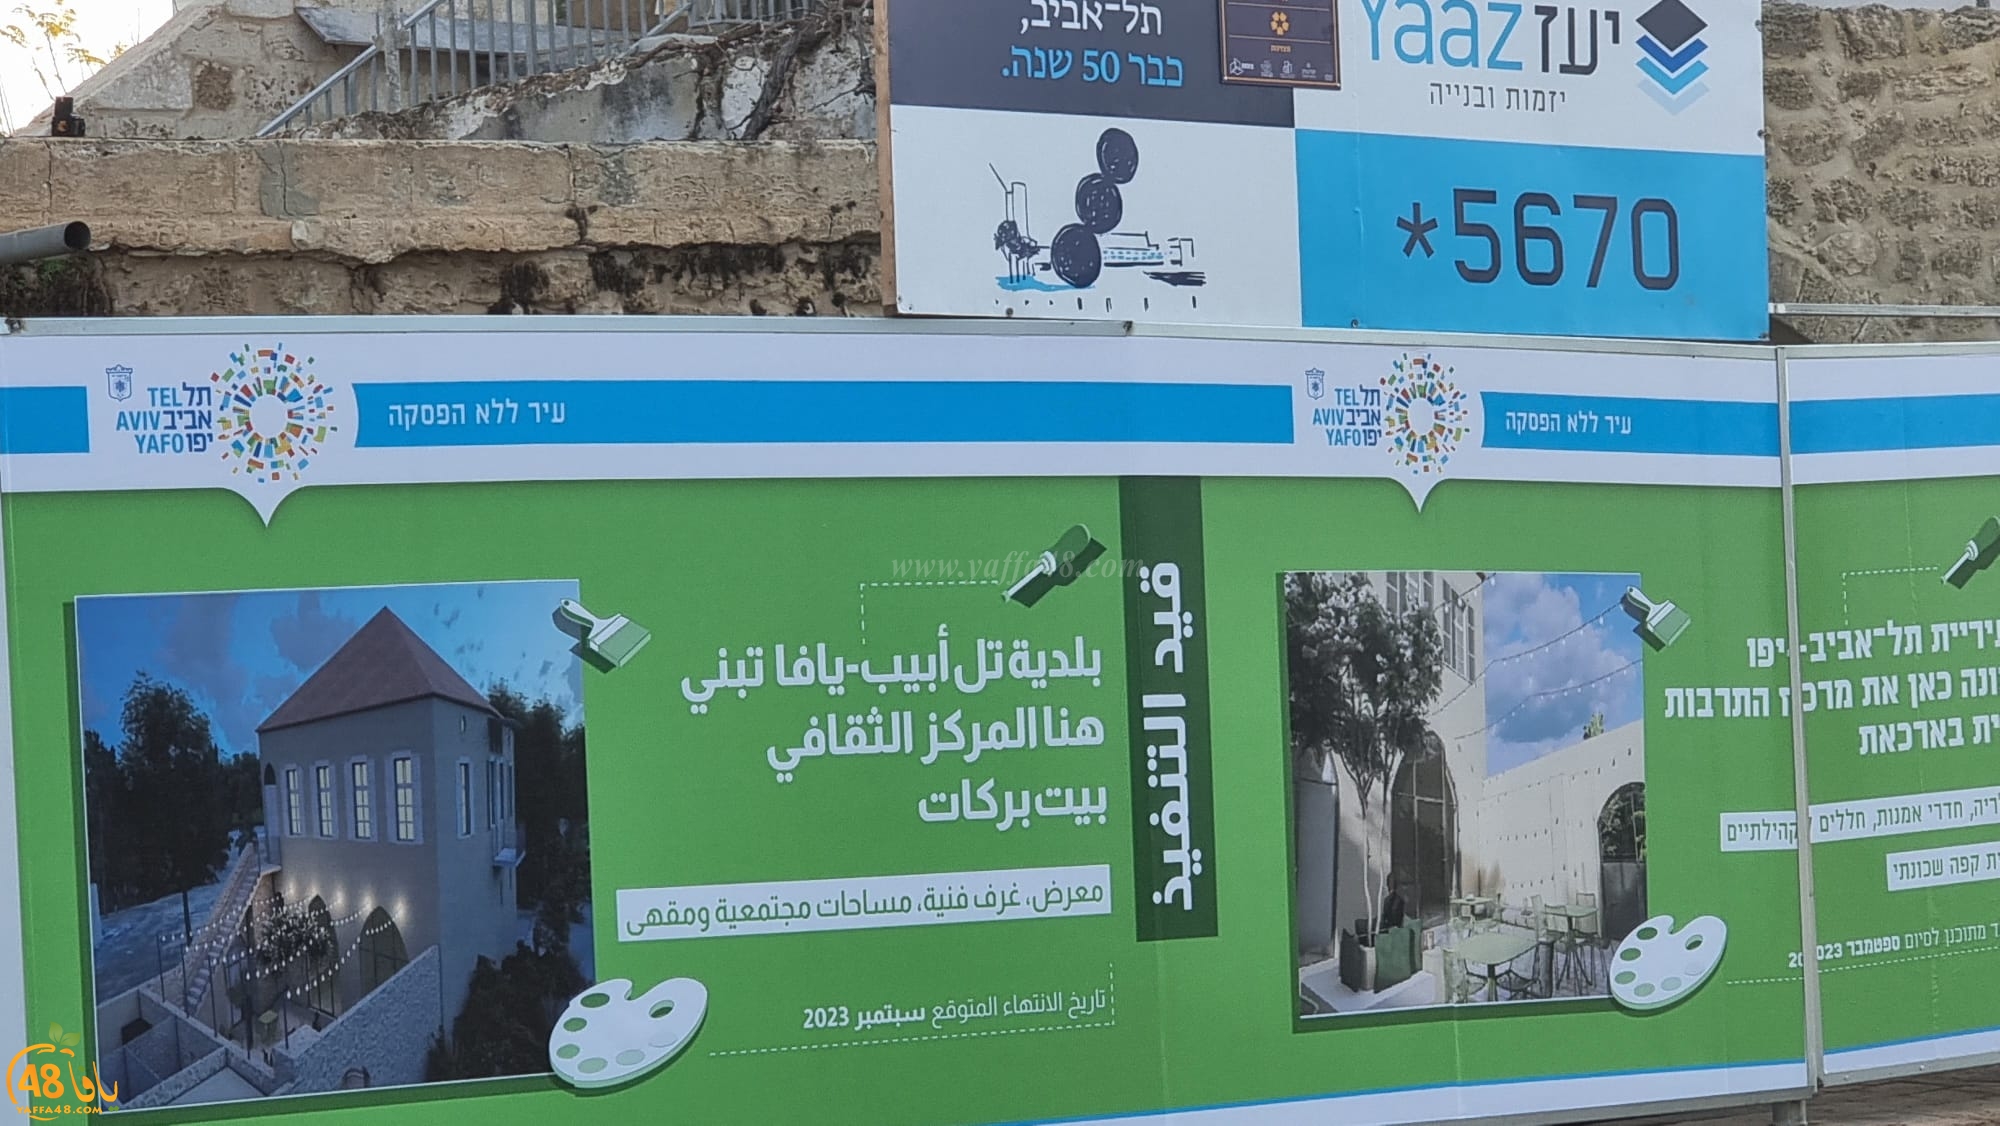  يافا: البلدية تباشر بتحويل بيت بركات إلى مركز ثقافي 